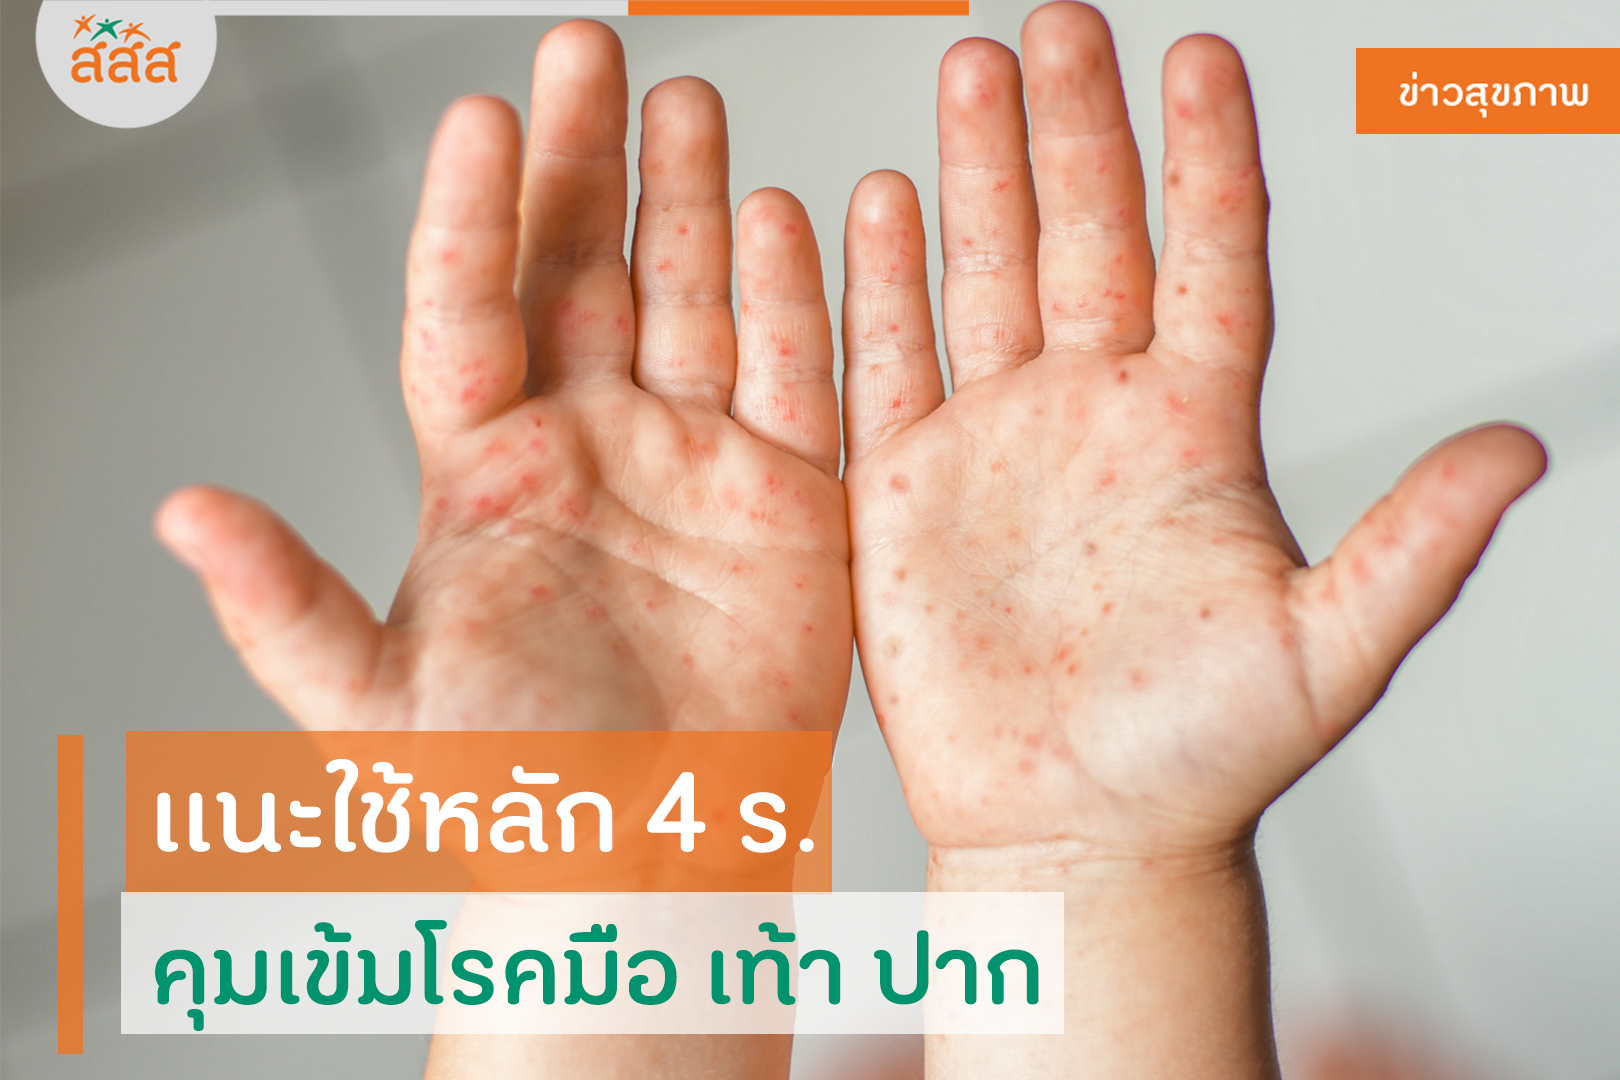 แนะใช้หลัก 4 ร. คุมเข้มโรคมือ เท้า ปาก thaihealth